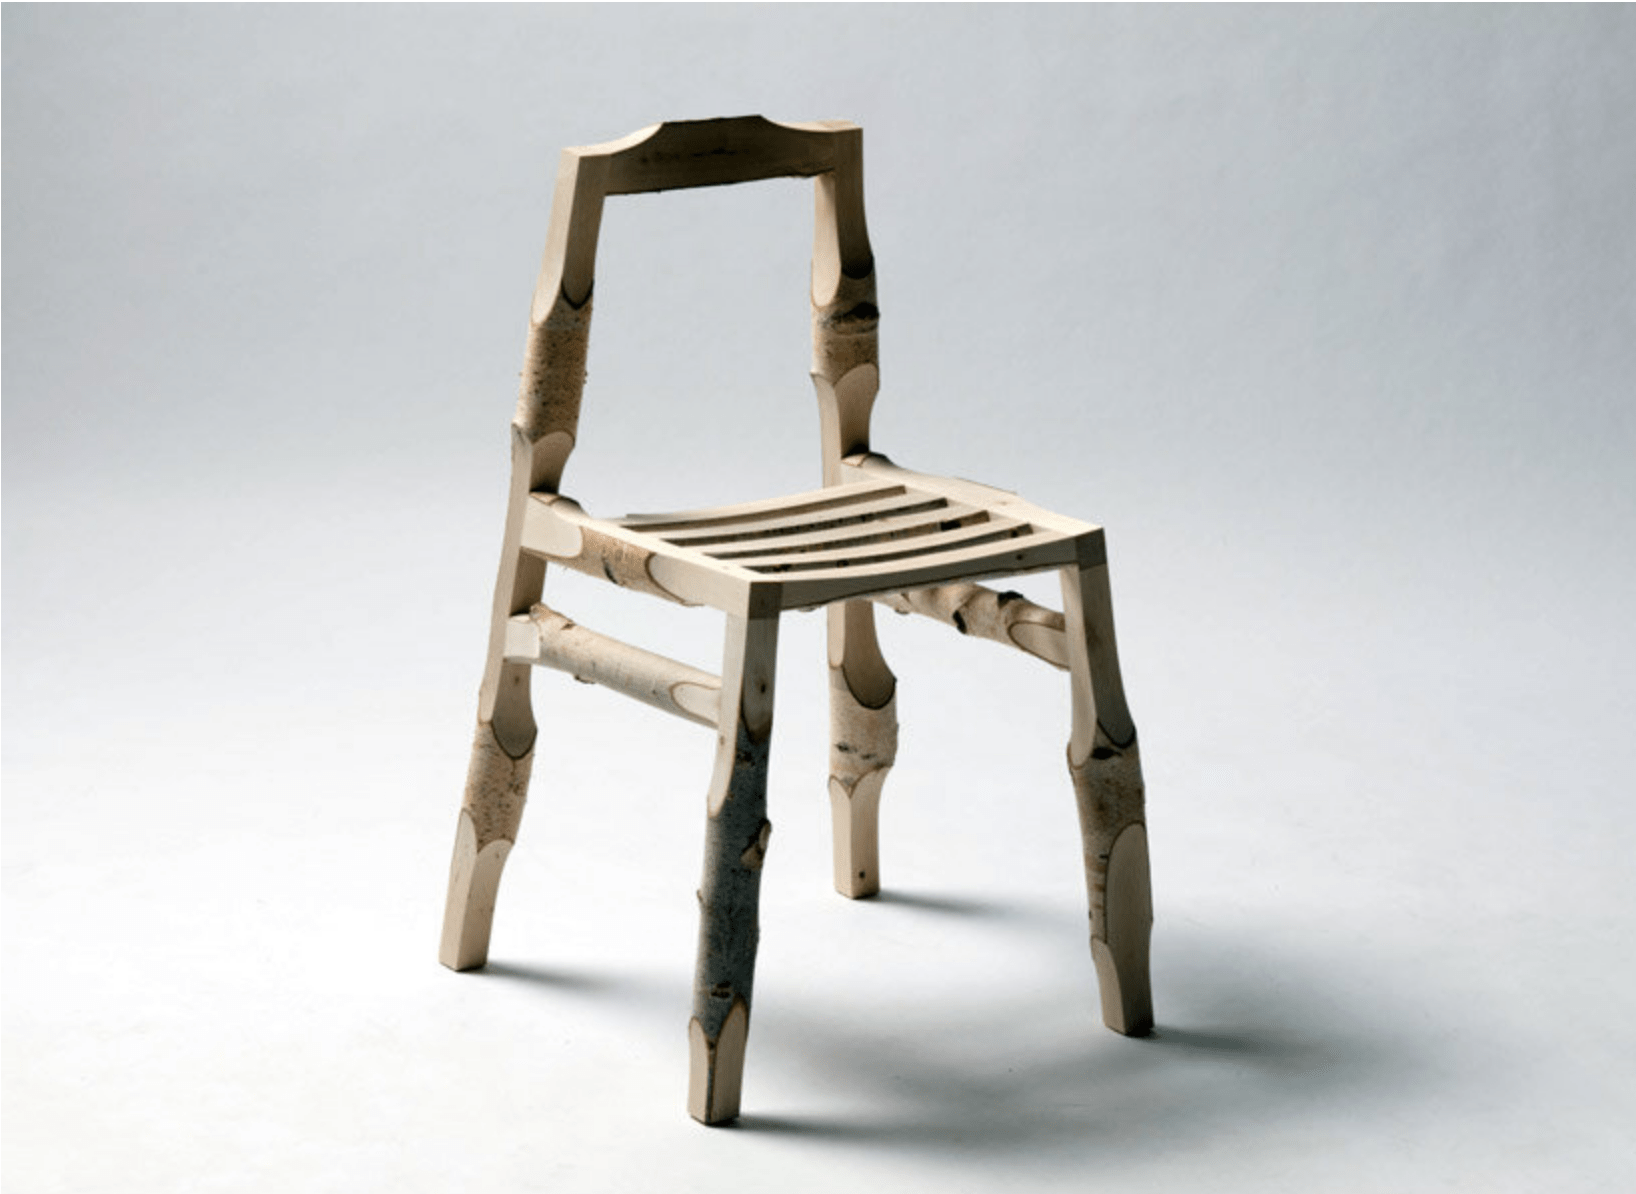 Computational log chair © matthias gschwendtner